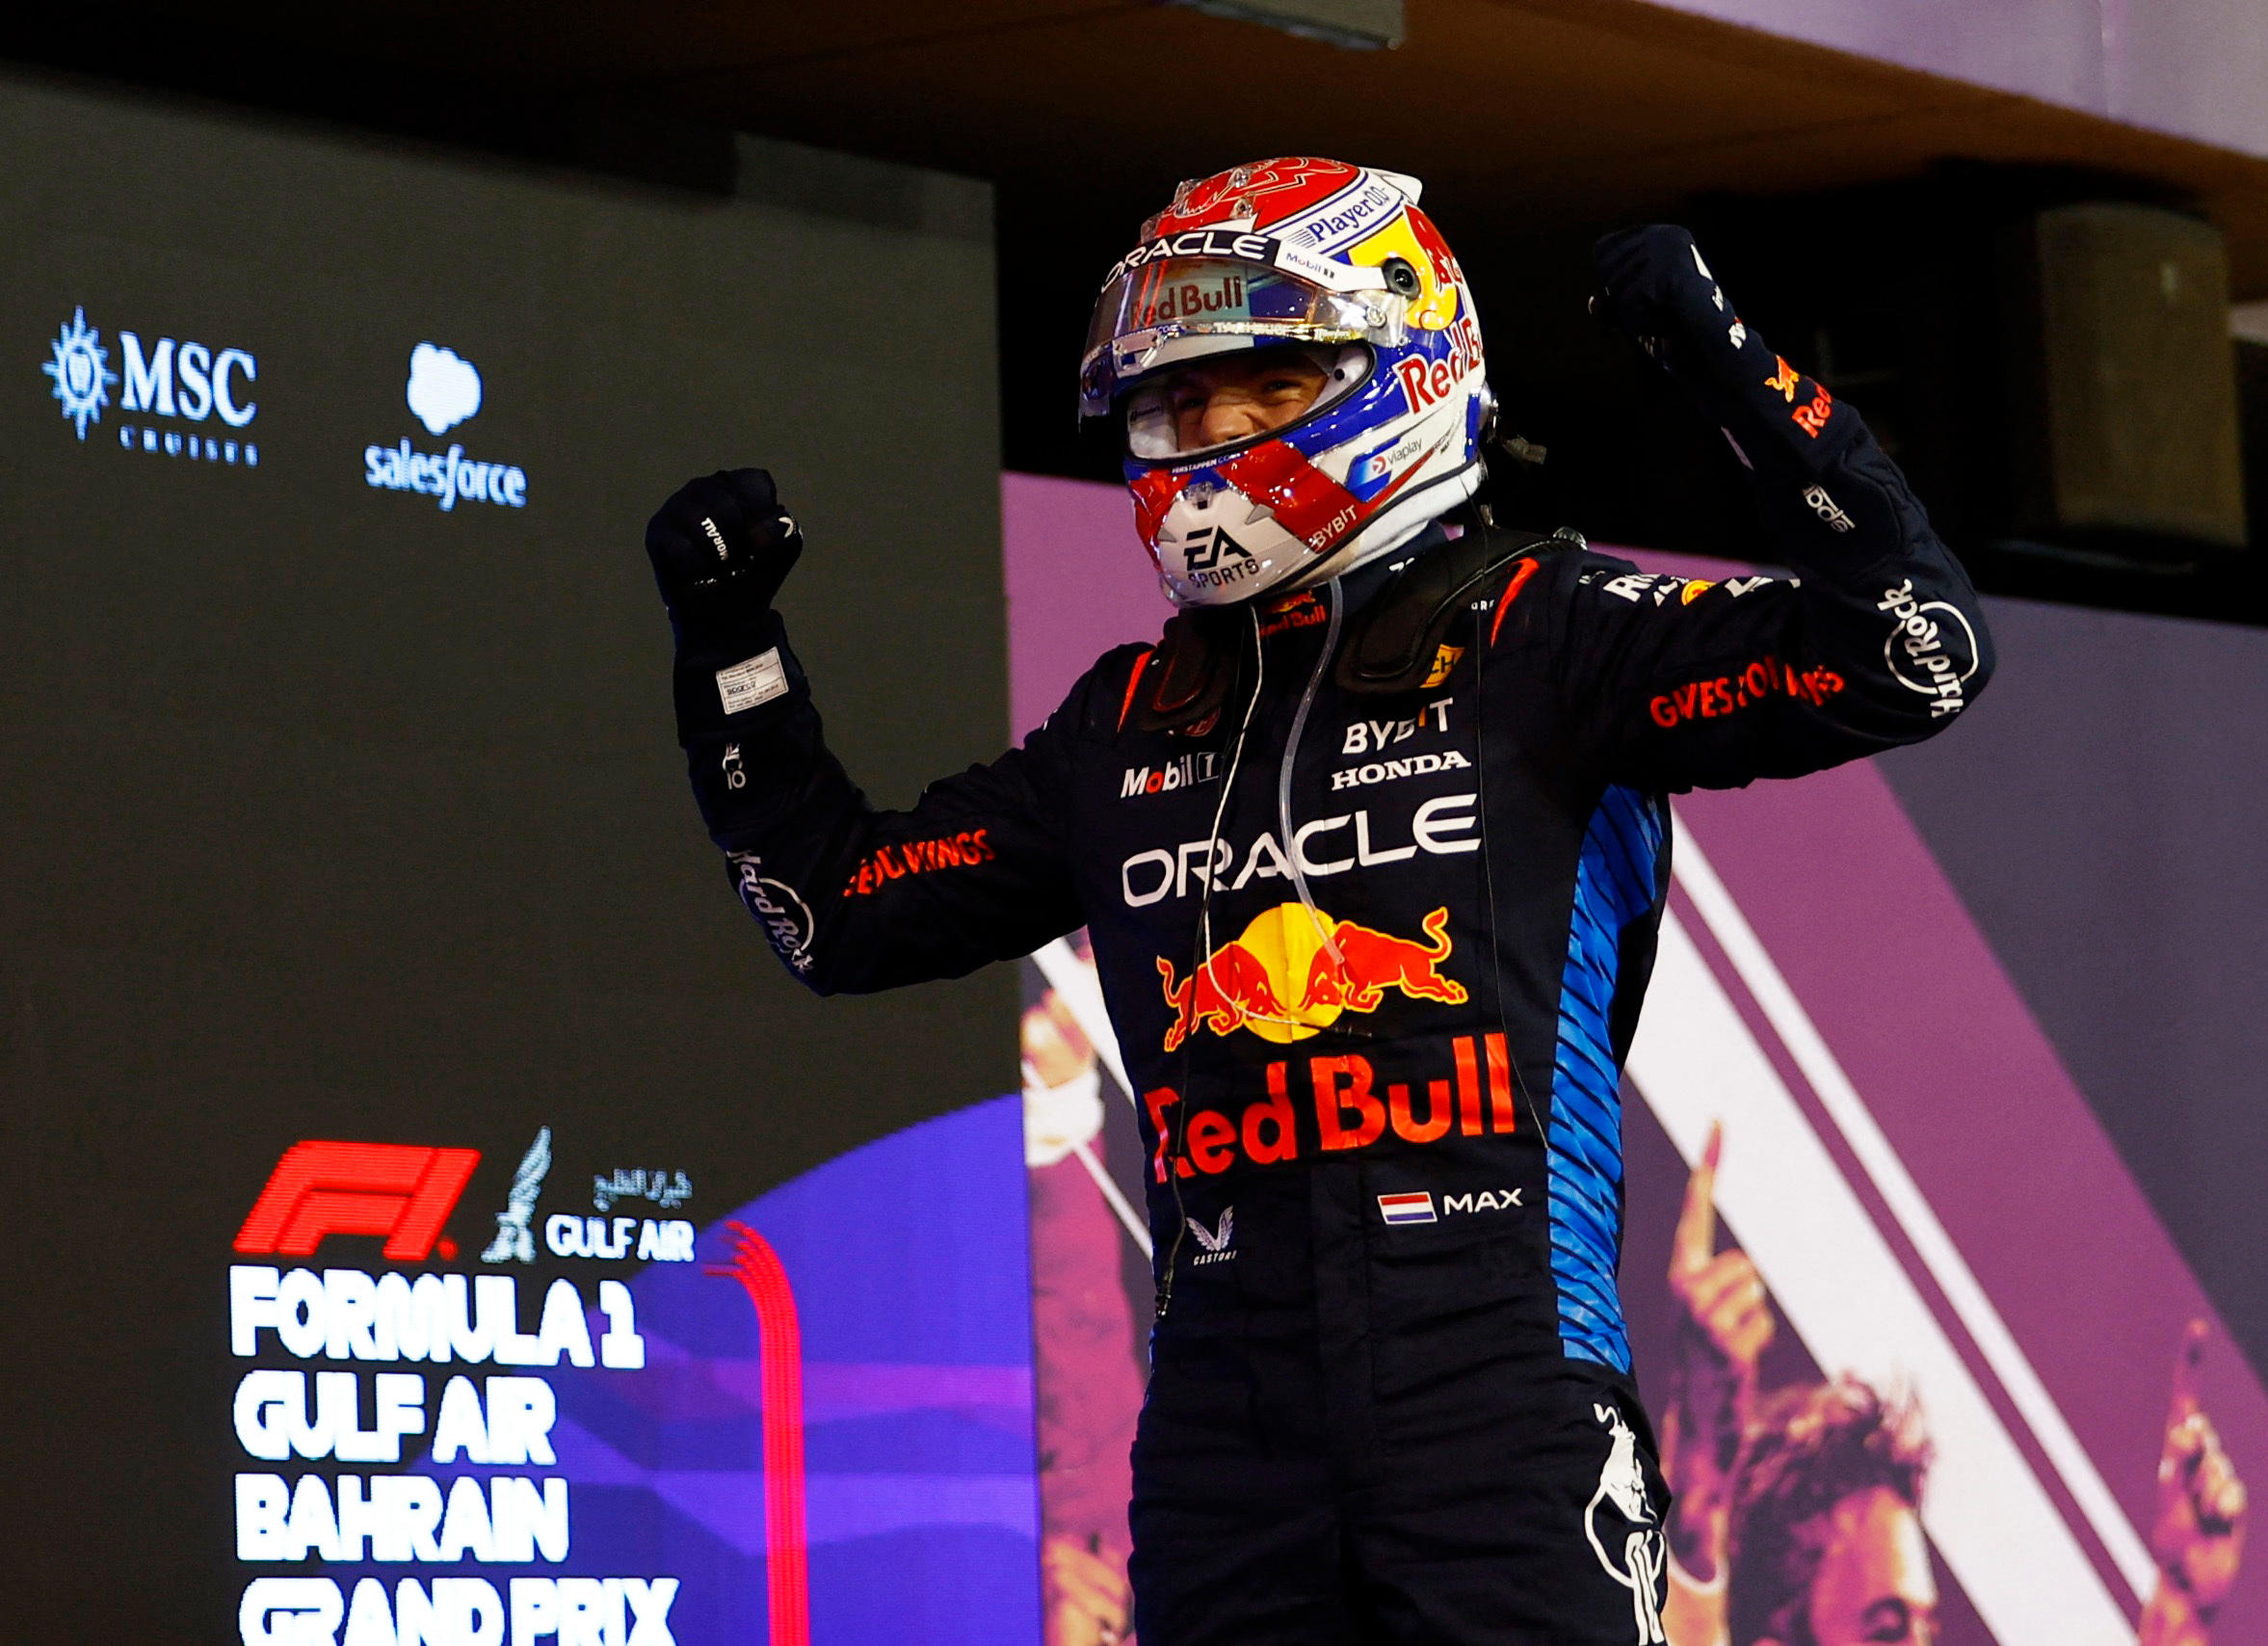 C'est la 55e victoire en Grand Prix pour le champion du monde Max Verstappen qui semble toujours intouchable. REUTERS/Rula Rouhana